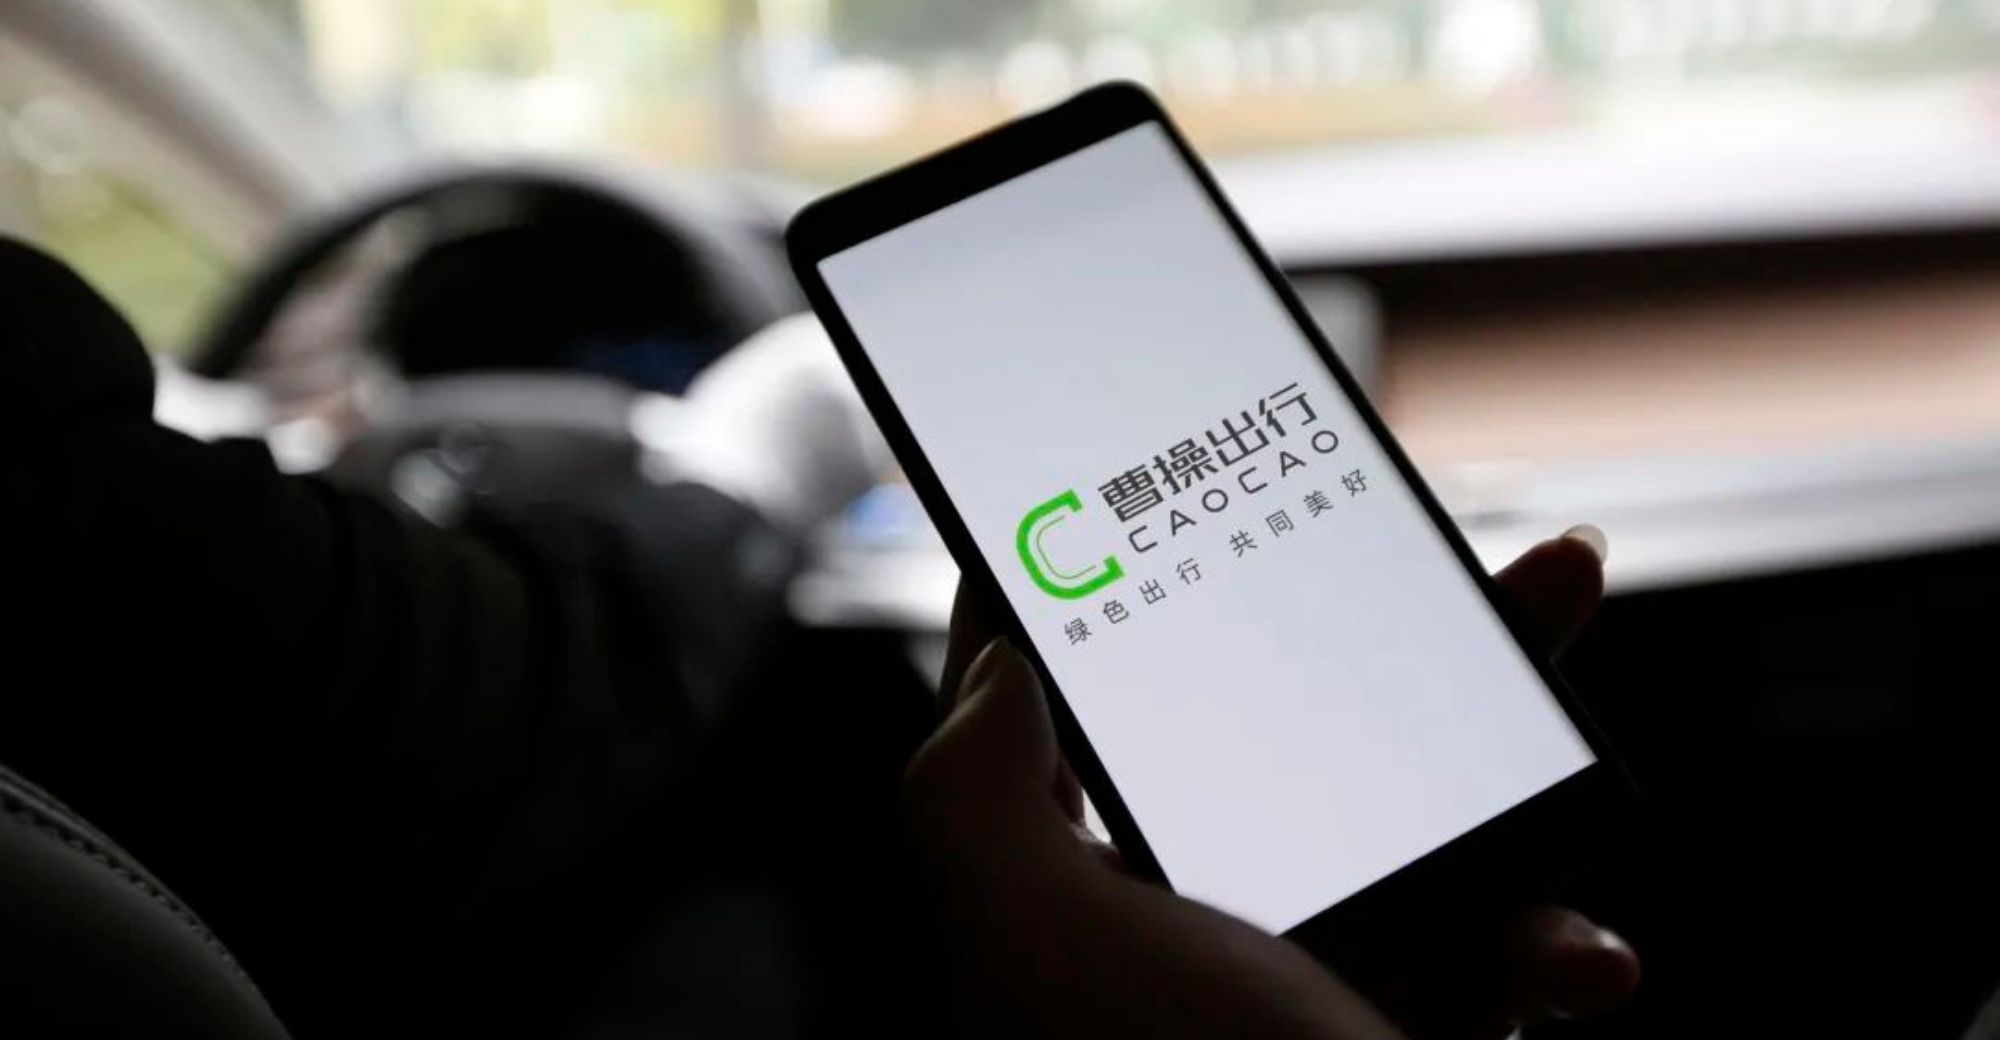 Caocao Mobile bekerja sama dengan Geely untuk membuat platform mengemudi otomatis komersial